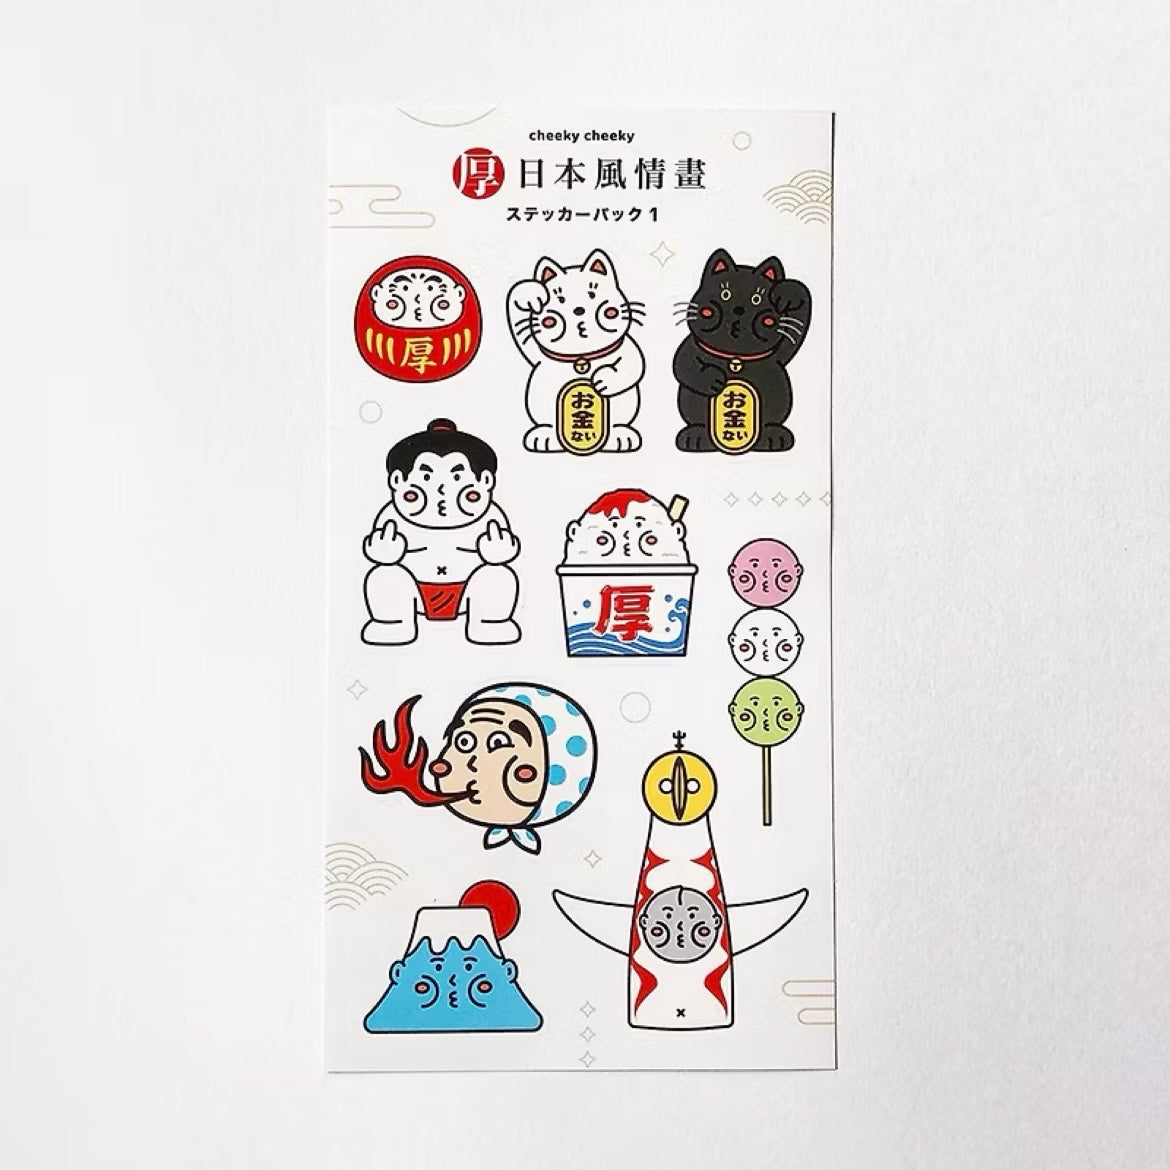 厚日本風情畫 Sticker Pack 1 貼紙